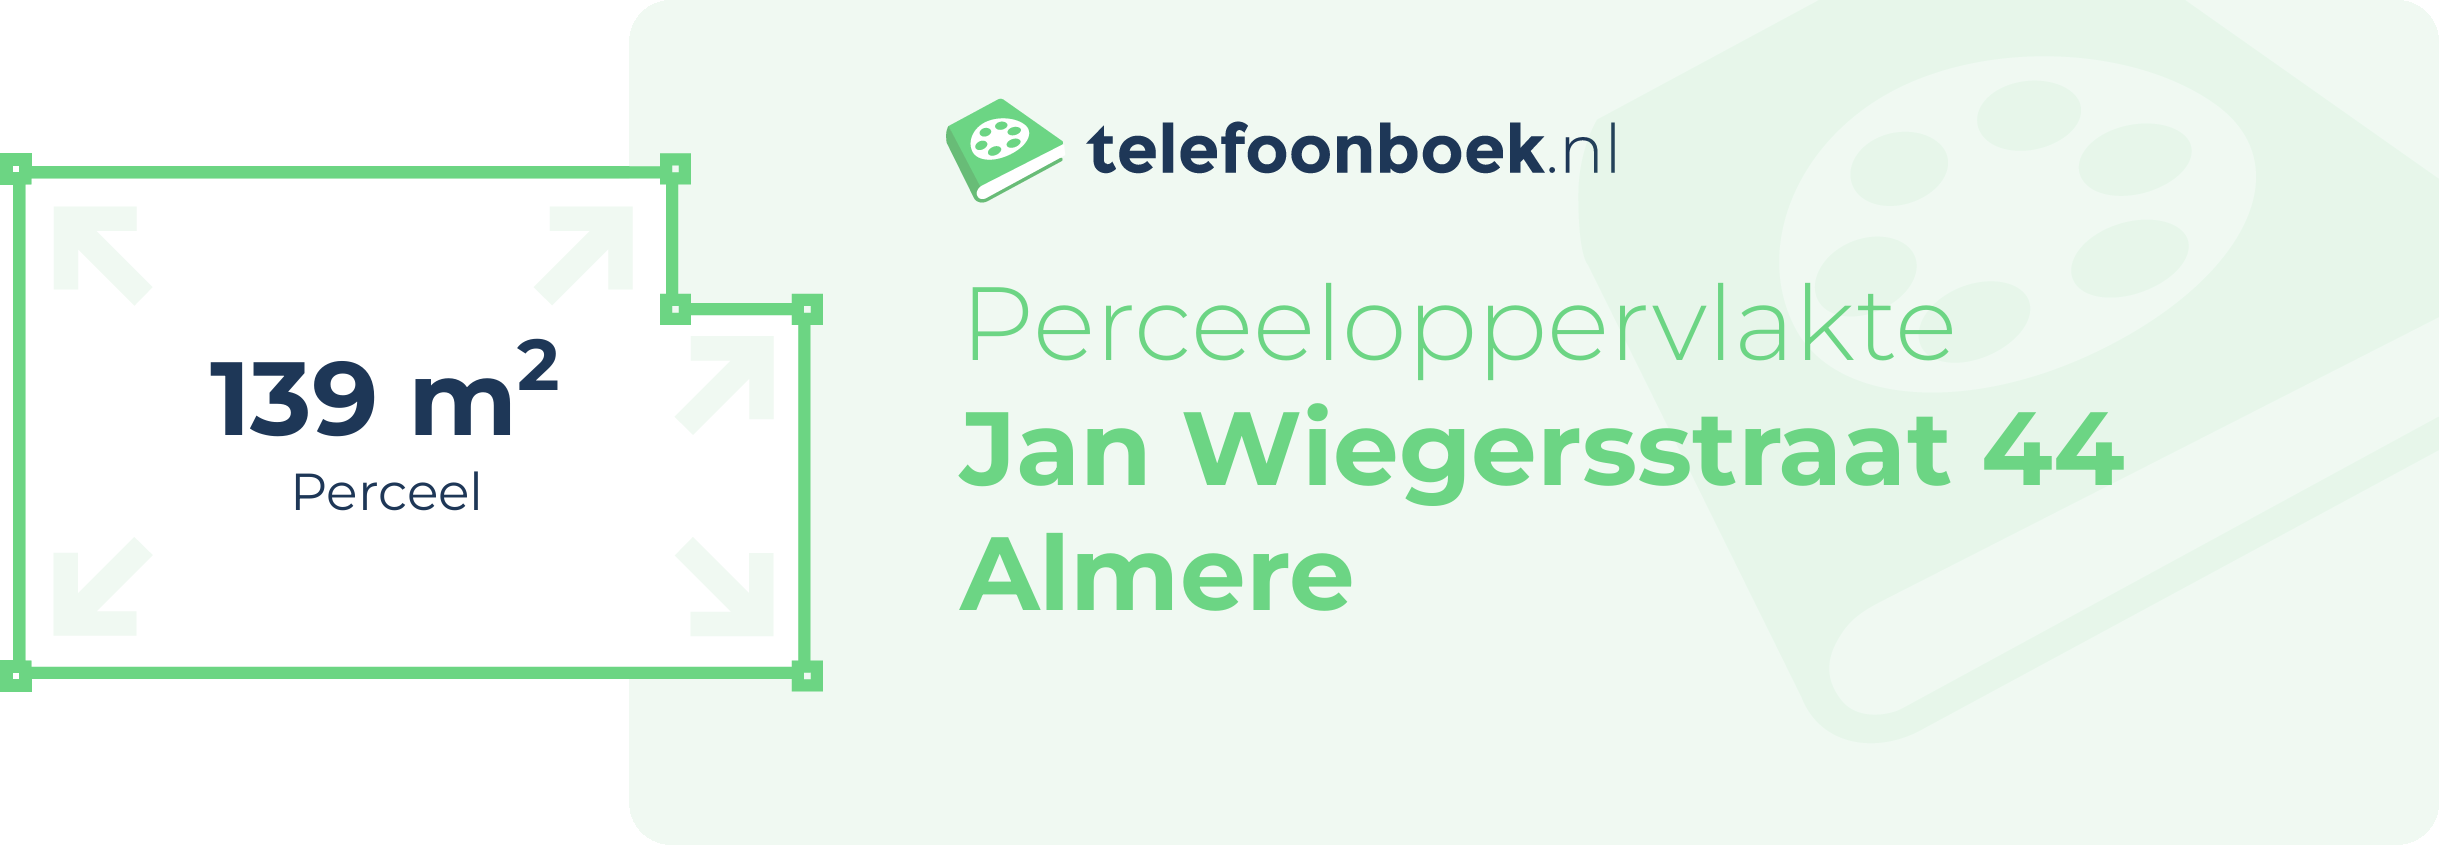 Perceeloppervlakte Jan Wiegersstraat 44 Almere